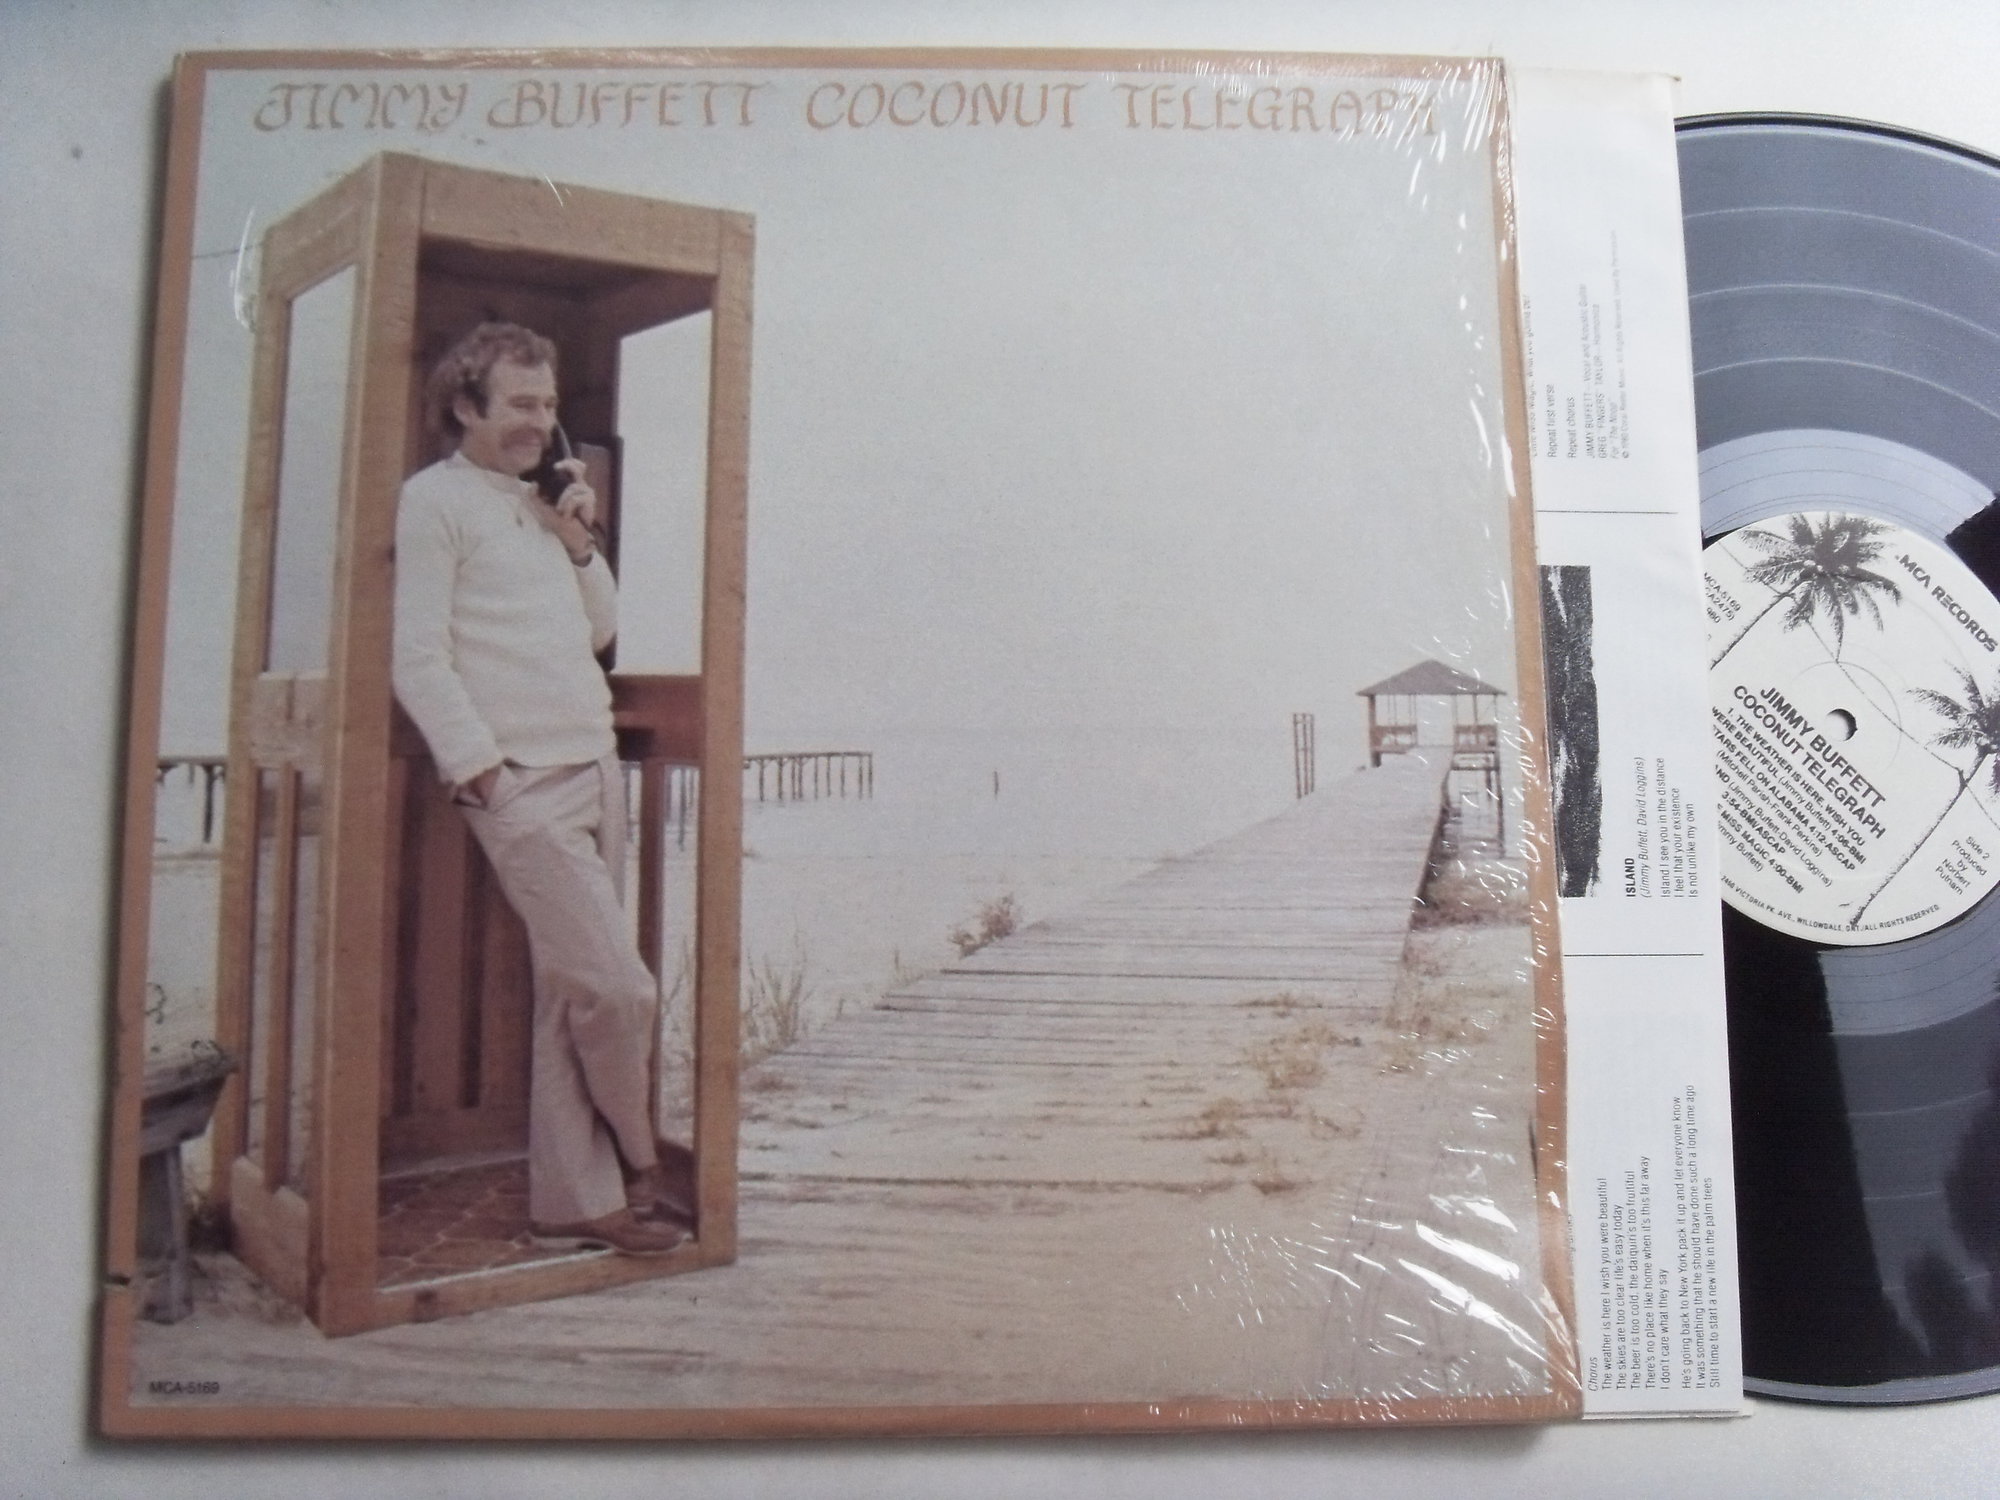 Jimmy BUFFET Coconut Telegraph